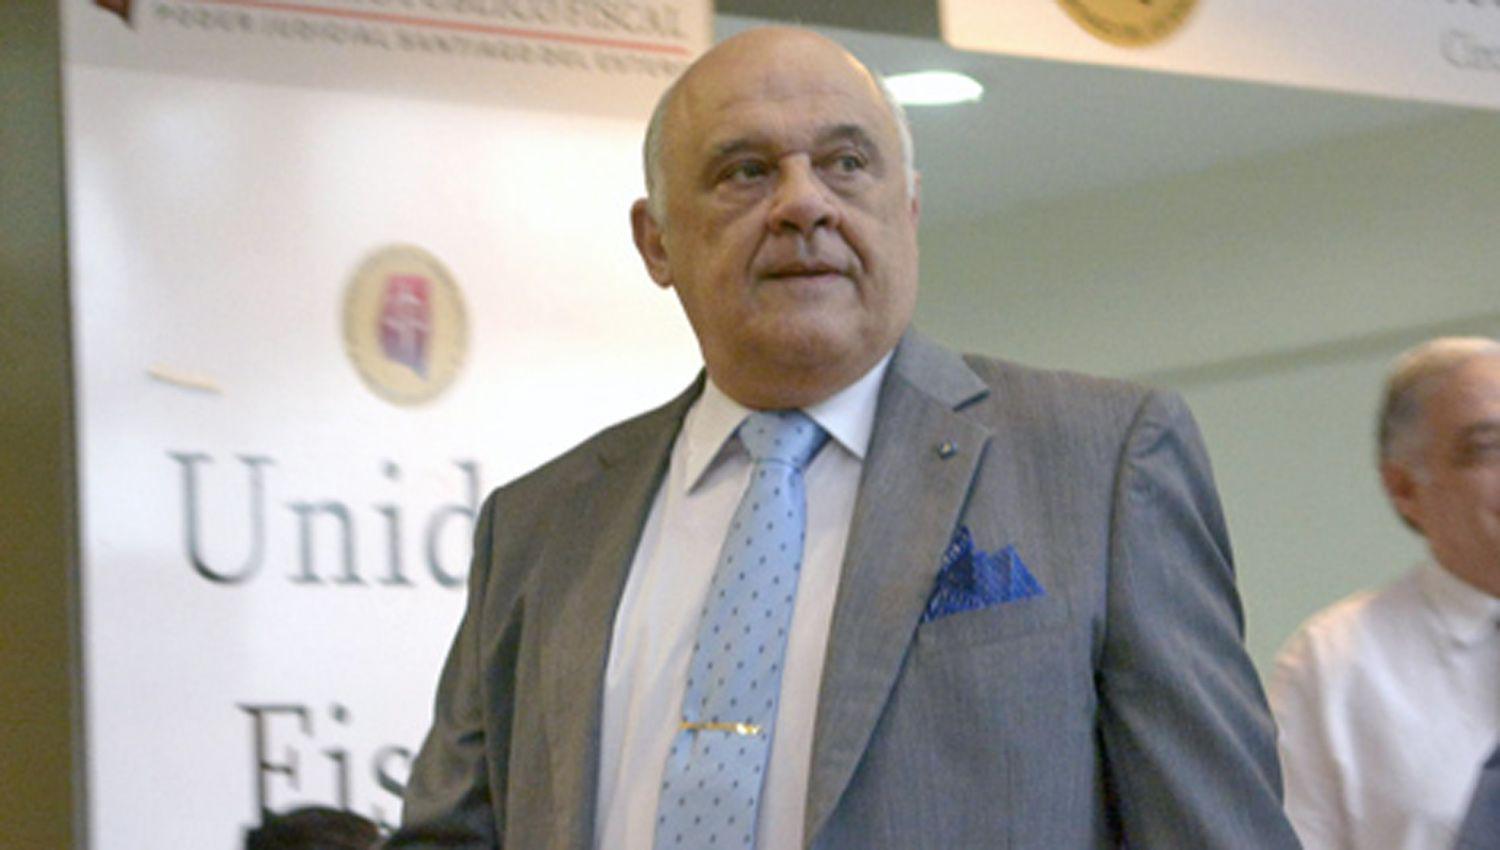 El Dr Carlos Ordóñez Ducca homologó el acuerdo entre
el imputado su defensa y la Fiscalía interviniente